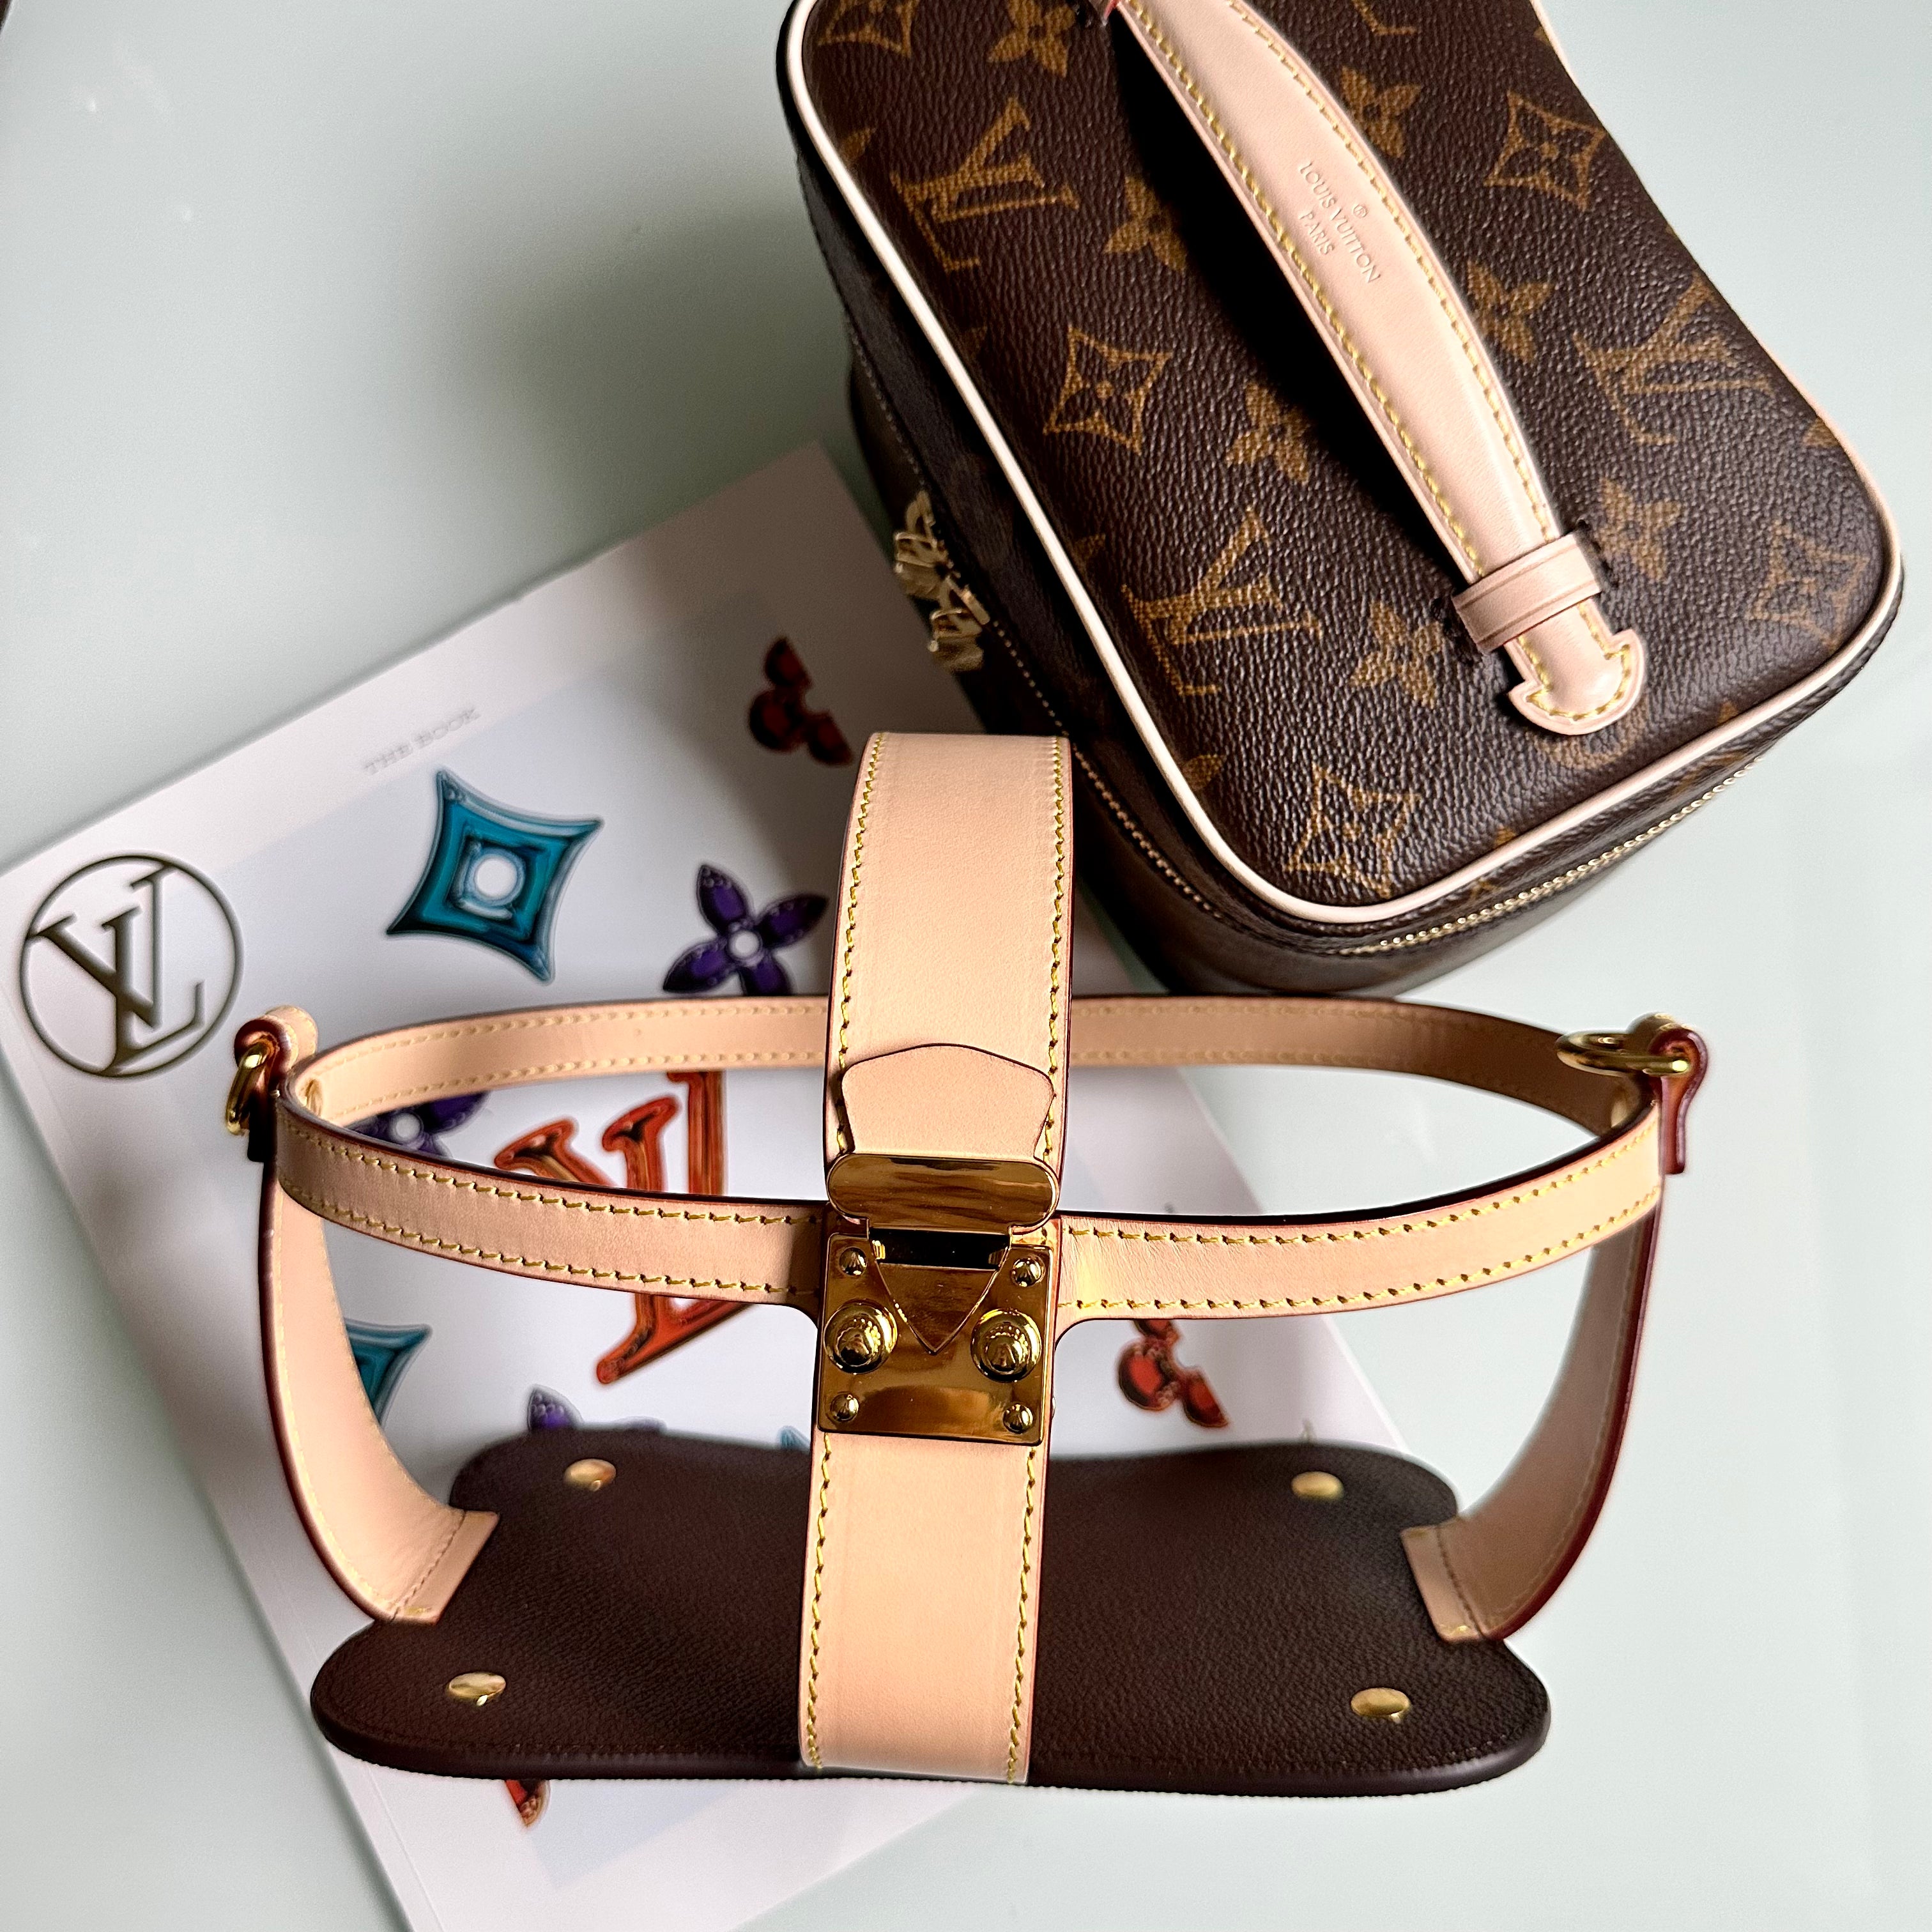 Louis Vuitton mini duffle bag. Great